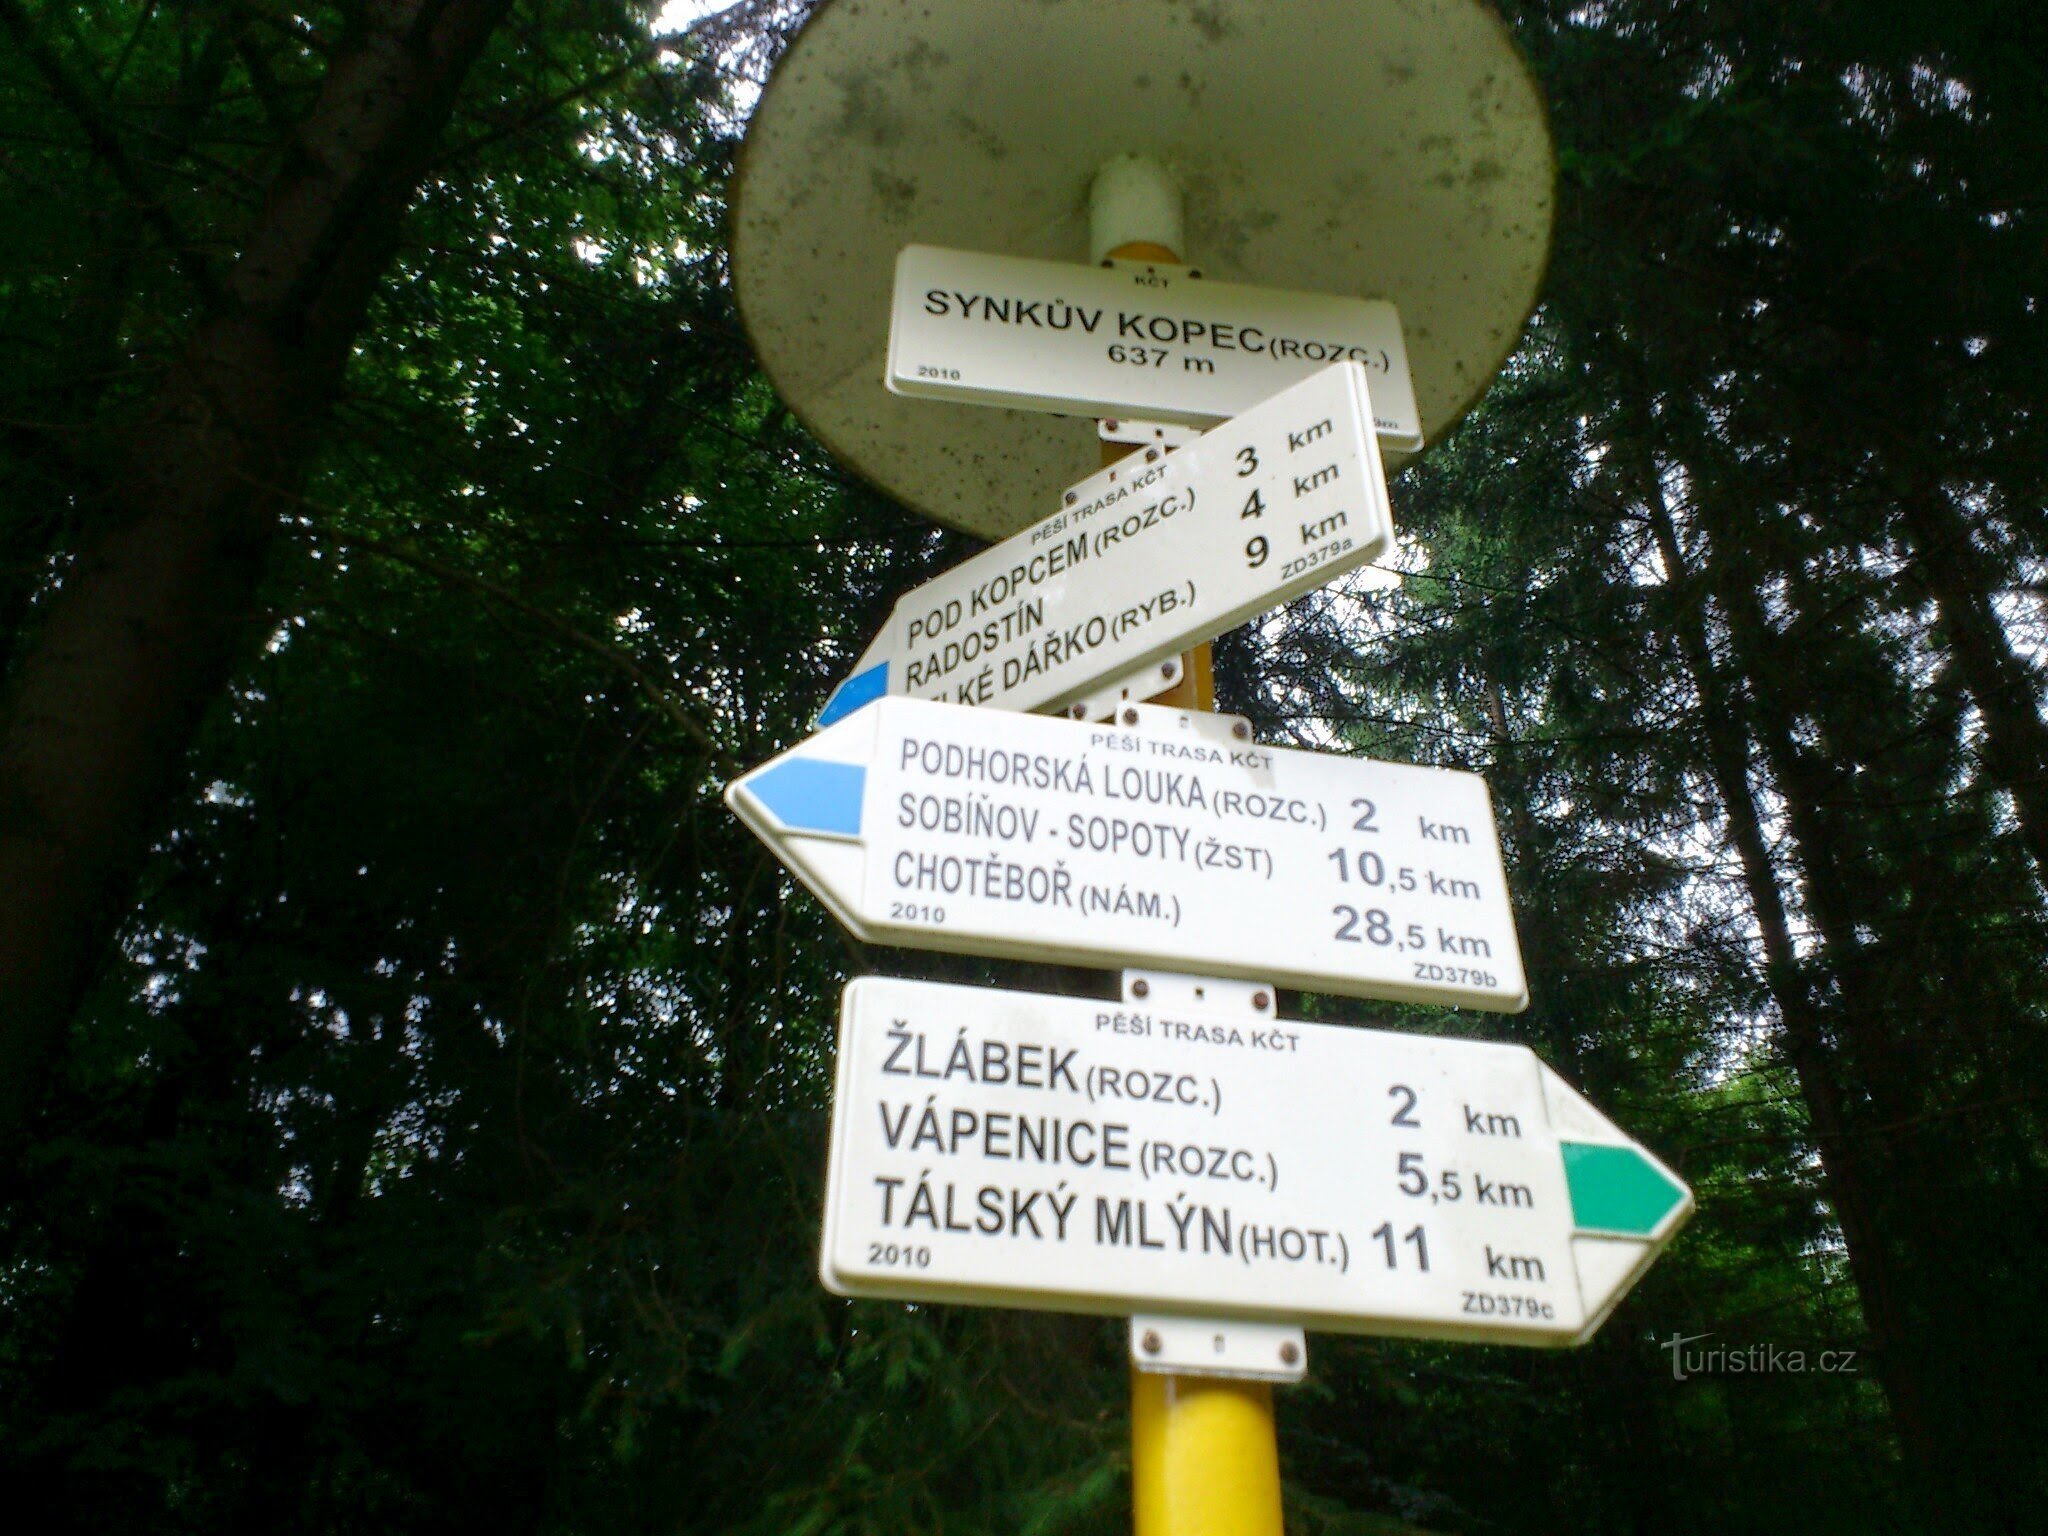 placa de sinalização Synkův kopec (placa de sinalização)